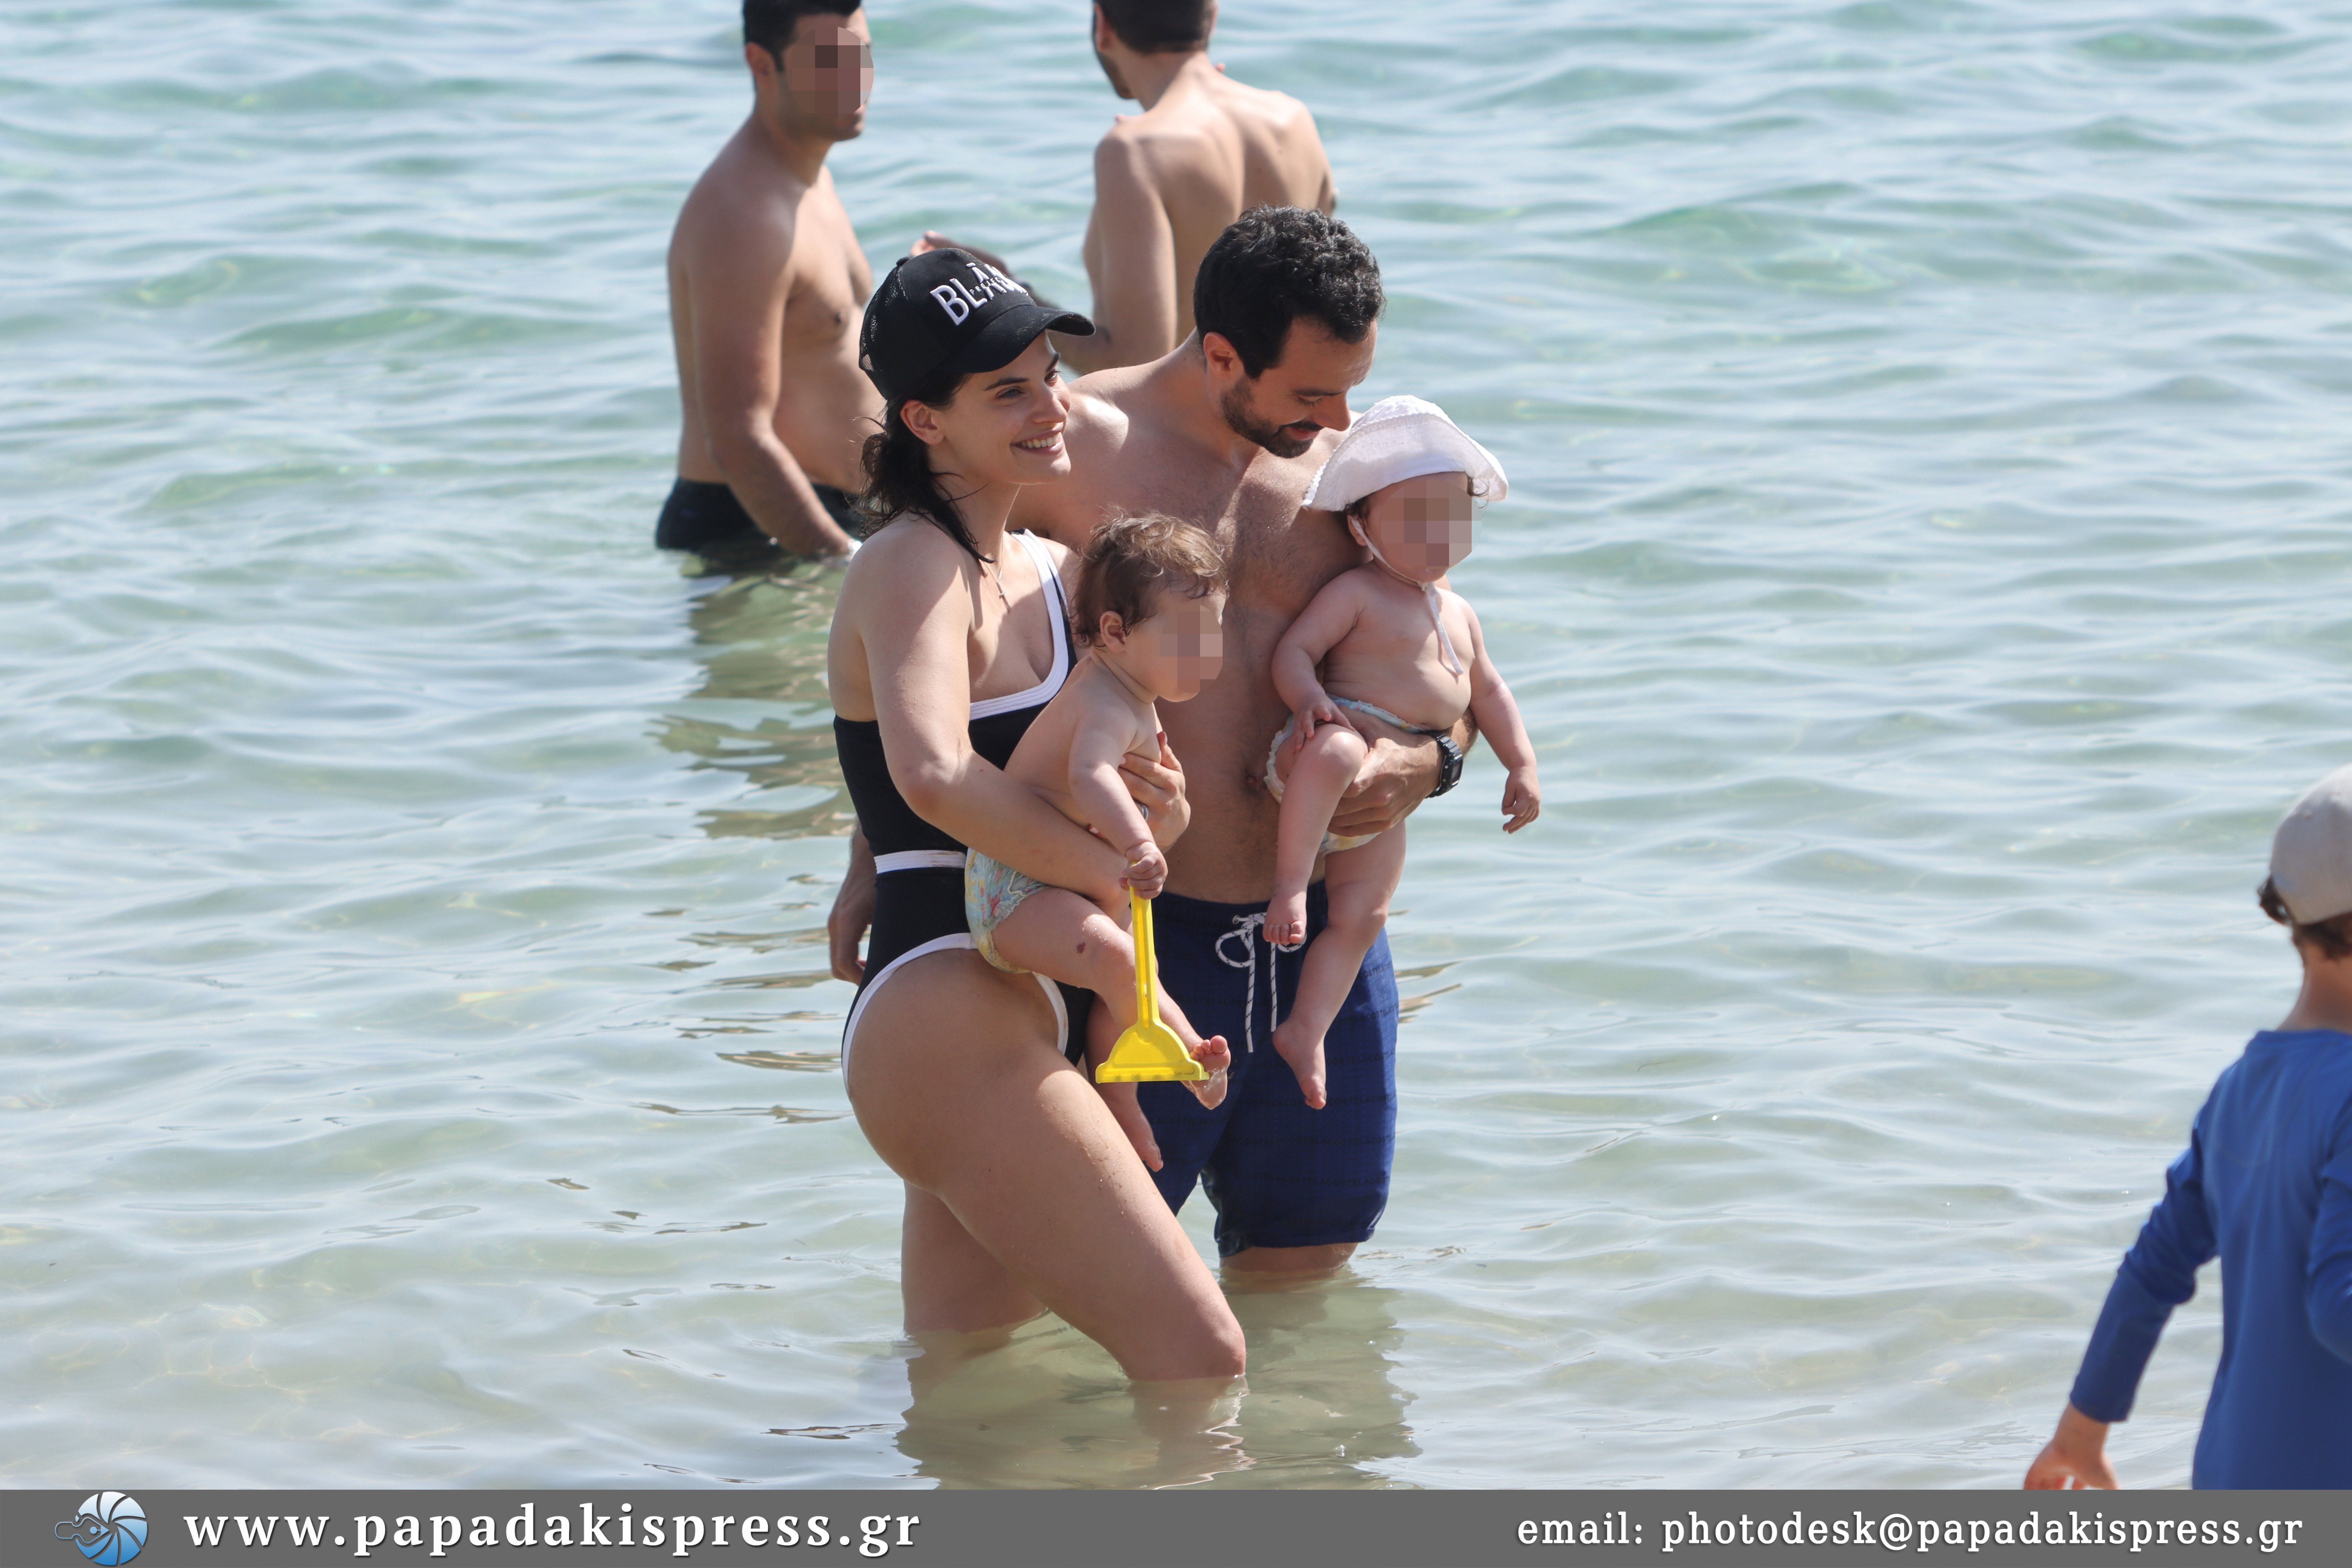 Χριστίνα Μπόμπα- Σάκης Τανιμανίδης: Δείτε τους στην παραλία με μαγιό χωρίς ρετούς και φίλτρα